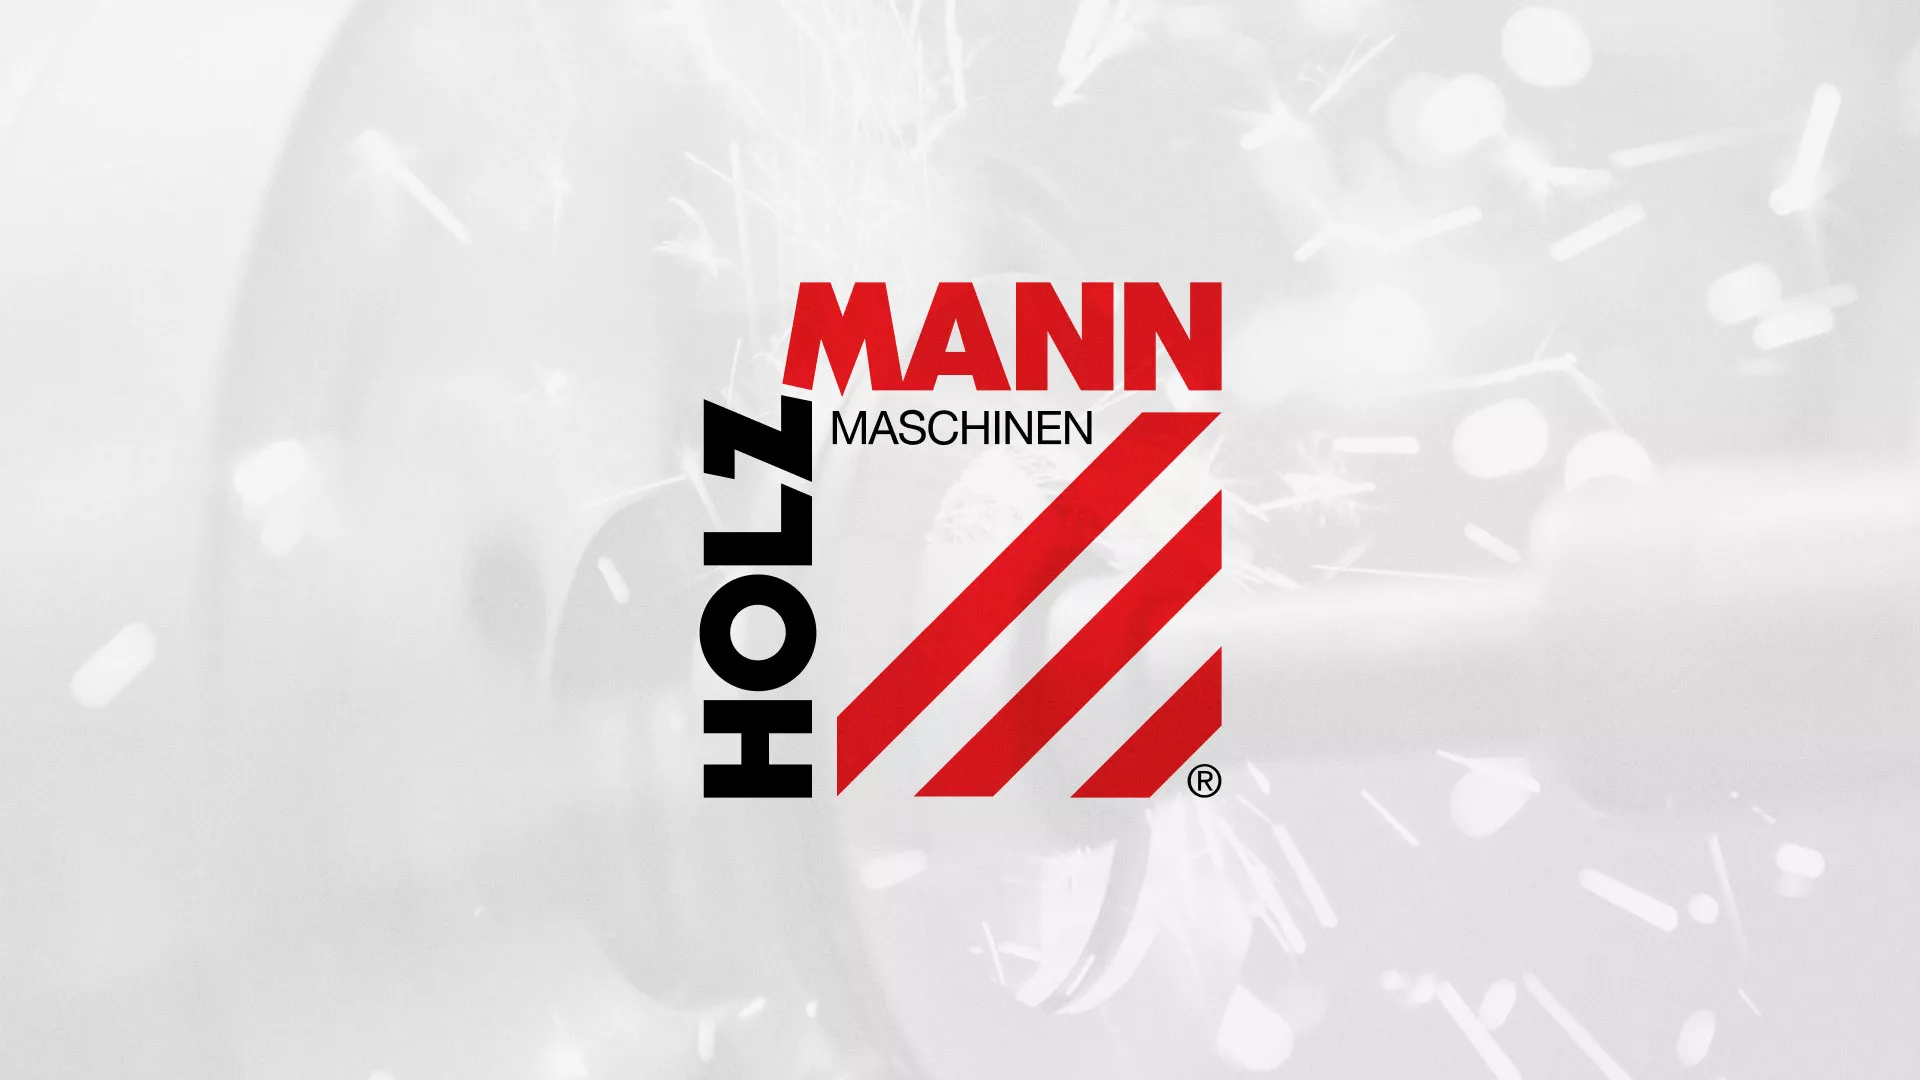 Создание сайта компании «HOLZMANN Maschinen GmbH» в Череповце